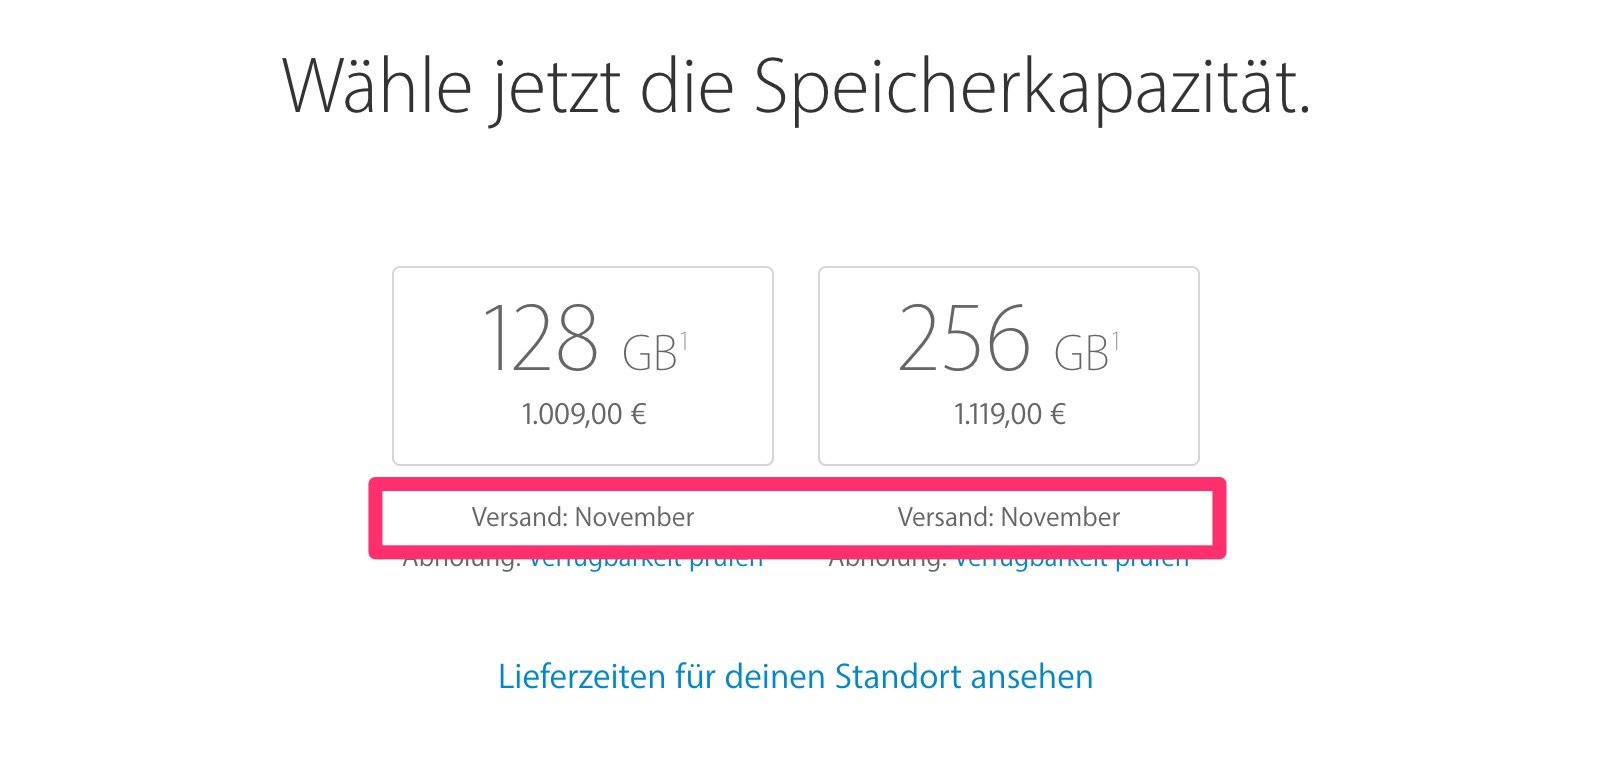 iPhone 7 (Plus) schon ausverkauft: Lieferzeit / Lieferung im November! 7